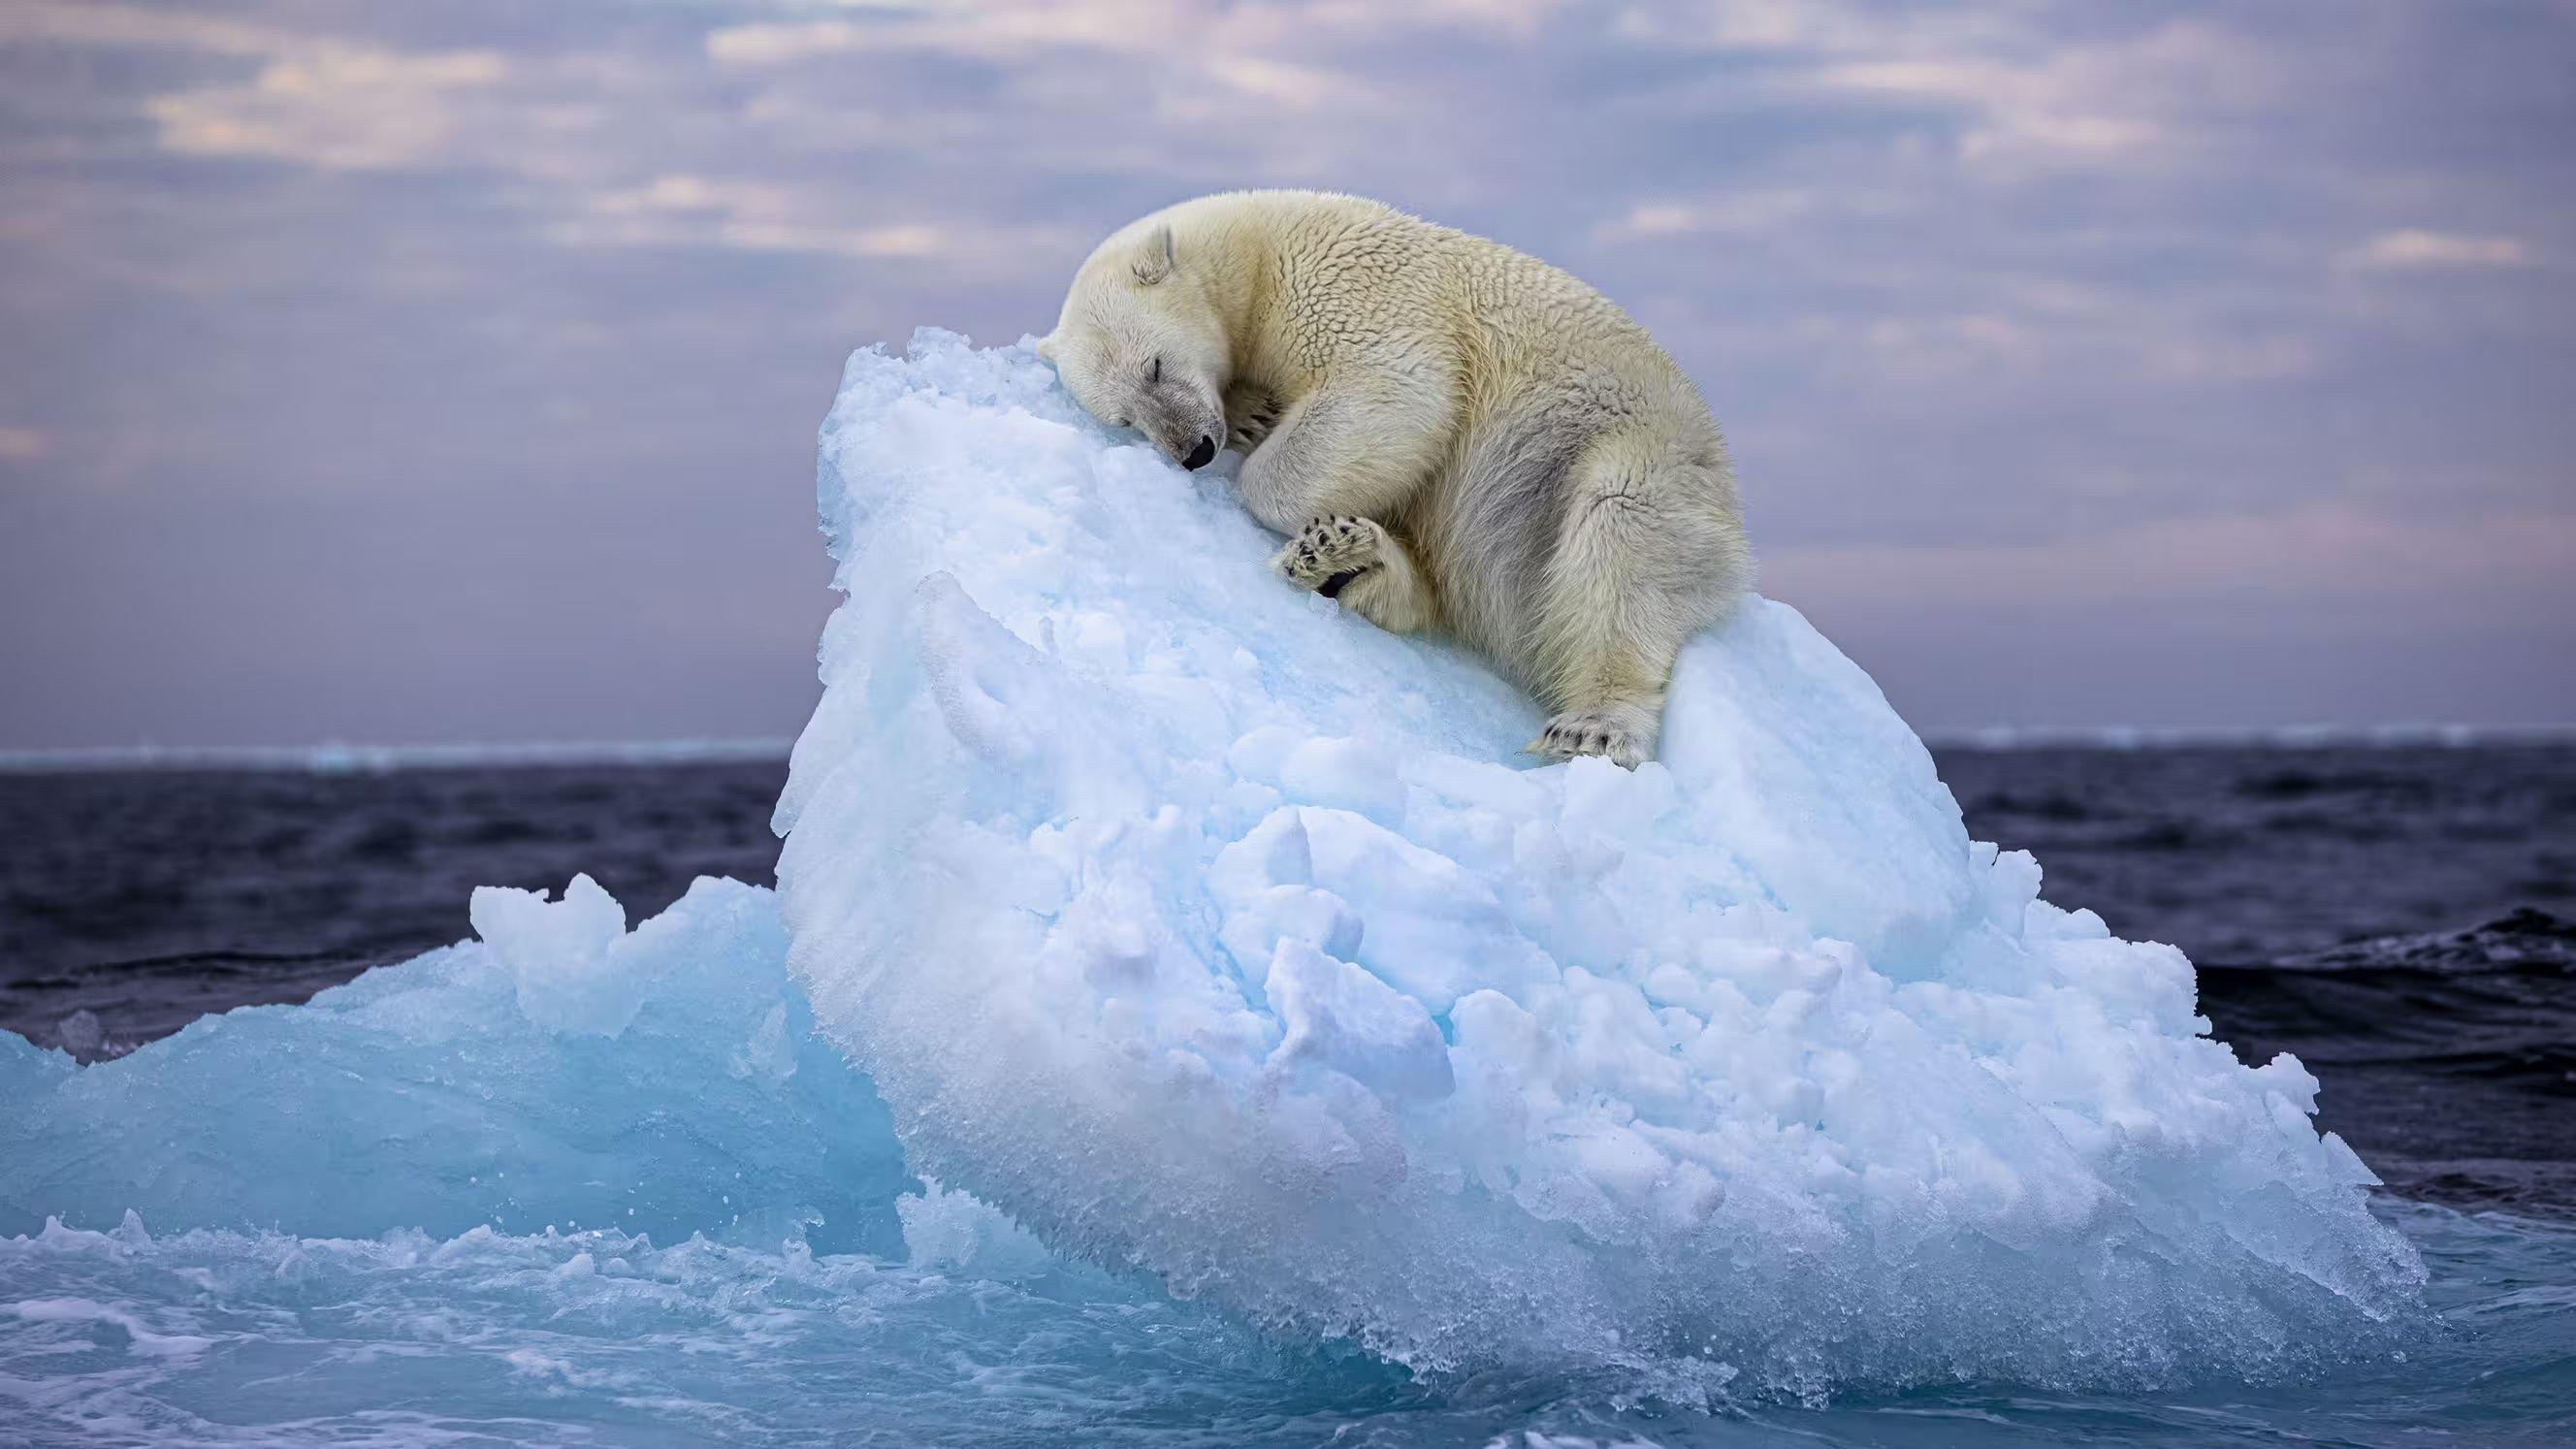 Ce cliché d'un ours polaire, tellement symbolique du réchauffement climatique, vient d'obtenir le prix du public du dernier Wildlife Photographer of the Year, concours annuel organisé par le Musée d’histoire naturelle de Londres. Nima Sarikhani/Wildlife Photo